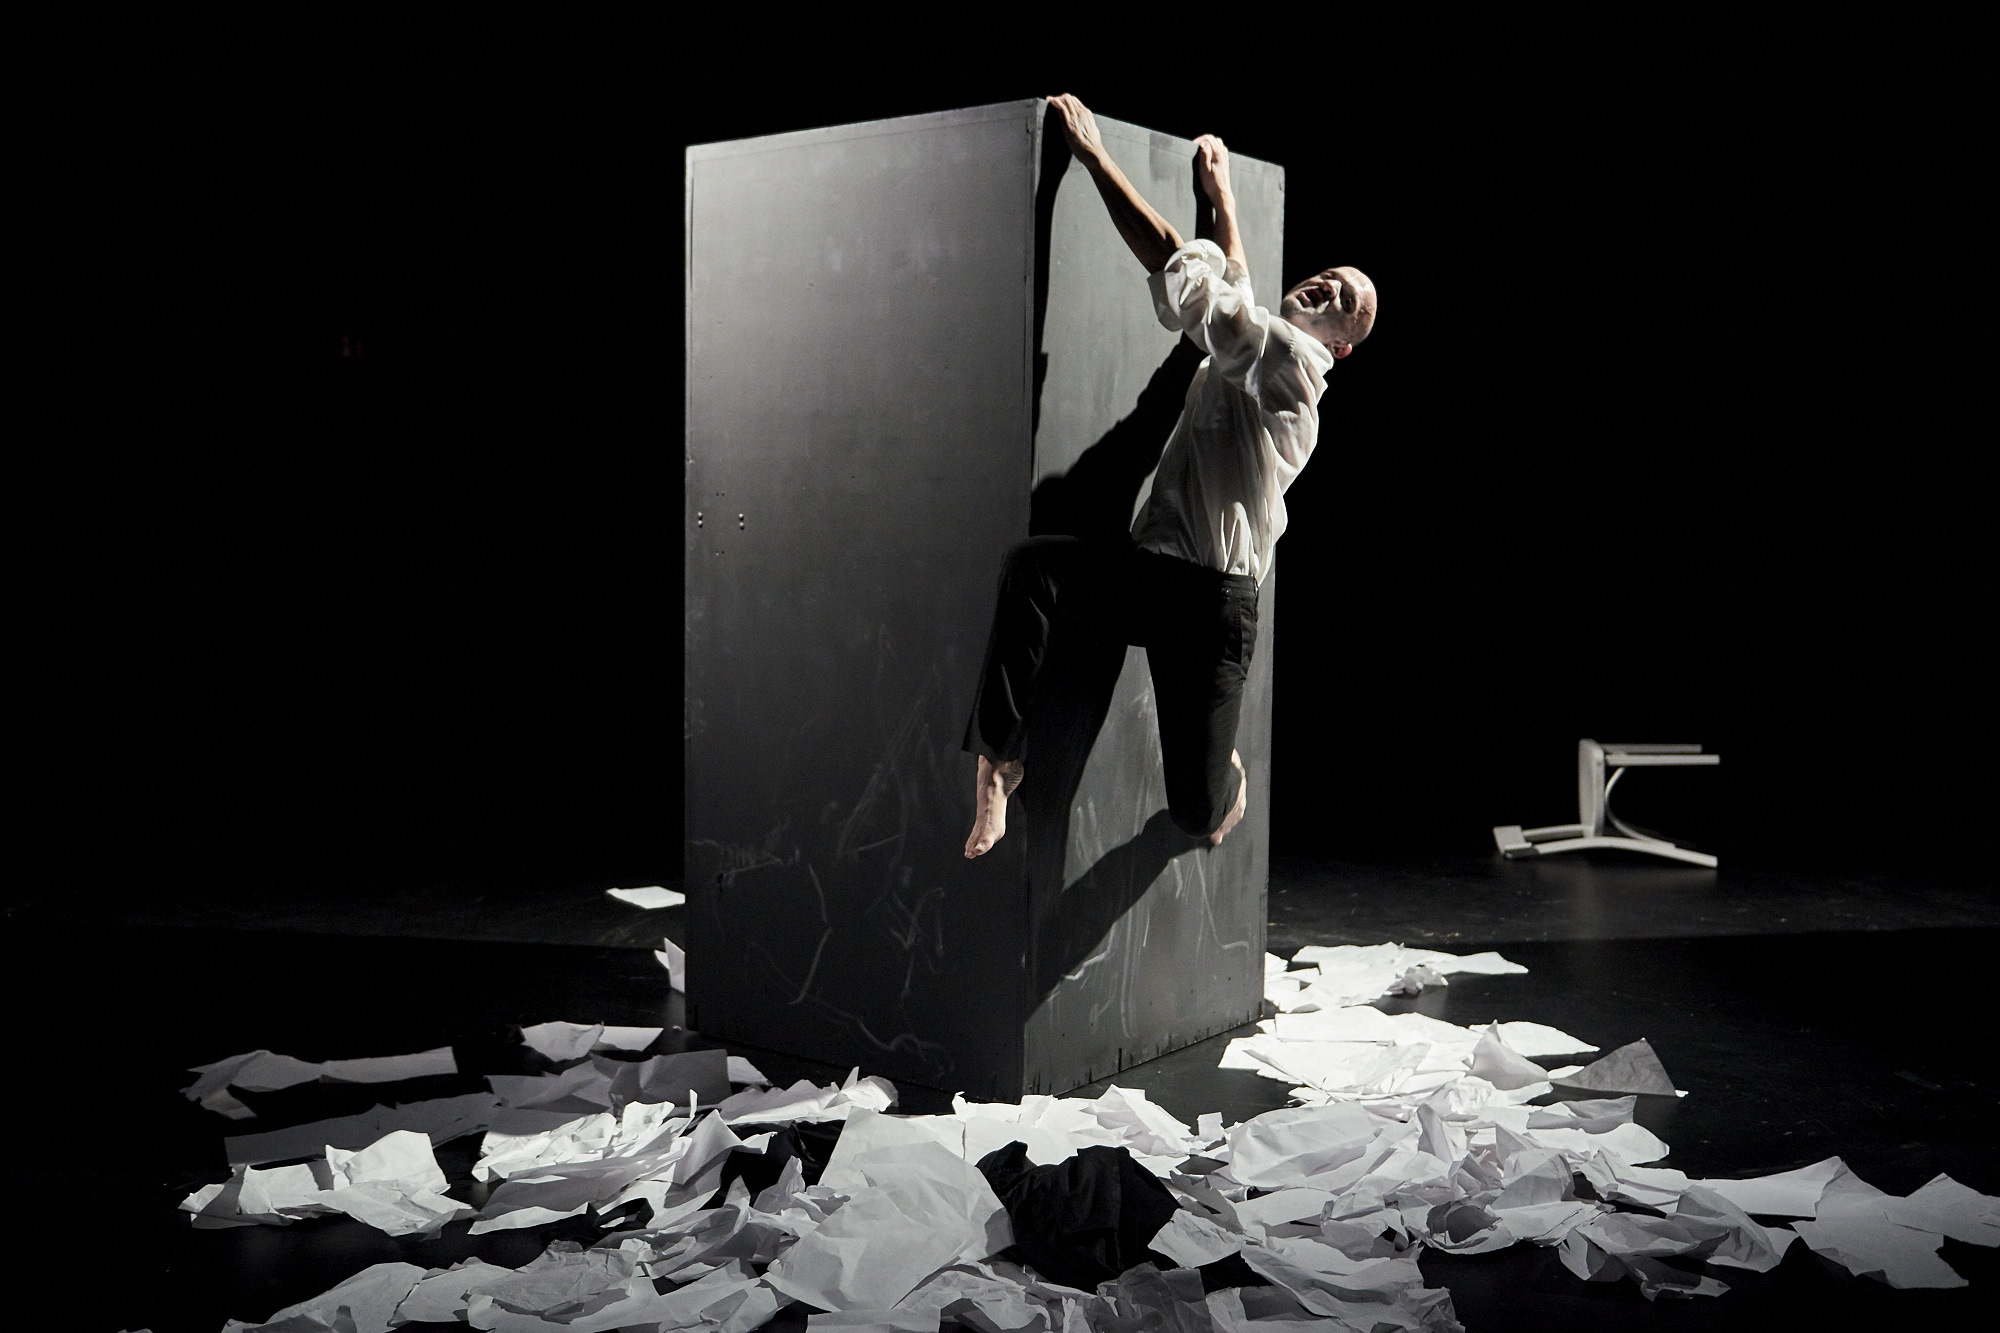 Theaterfotografie auf der sich ein Mann versuch nicht von einer Wand abzustürzen. Auf dem Boden ist ein Meer aus Papieren wild verteilt.